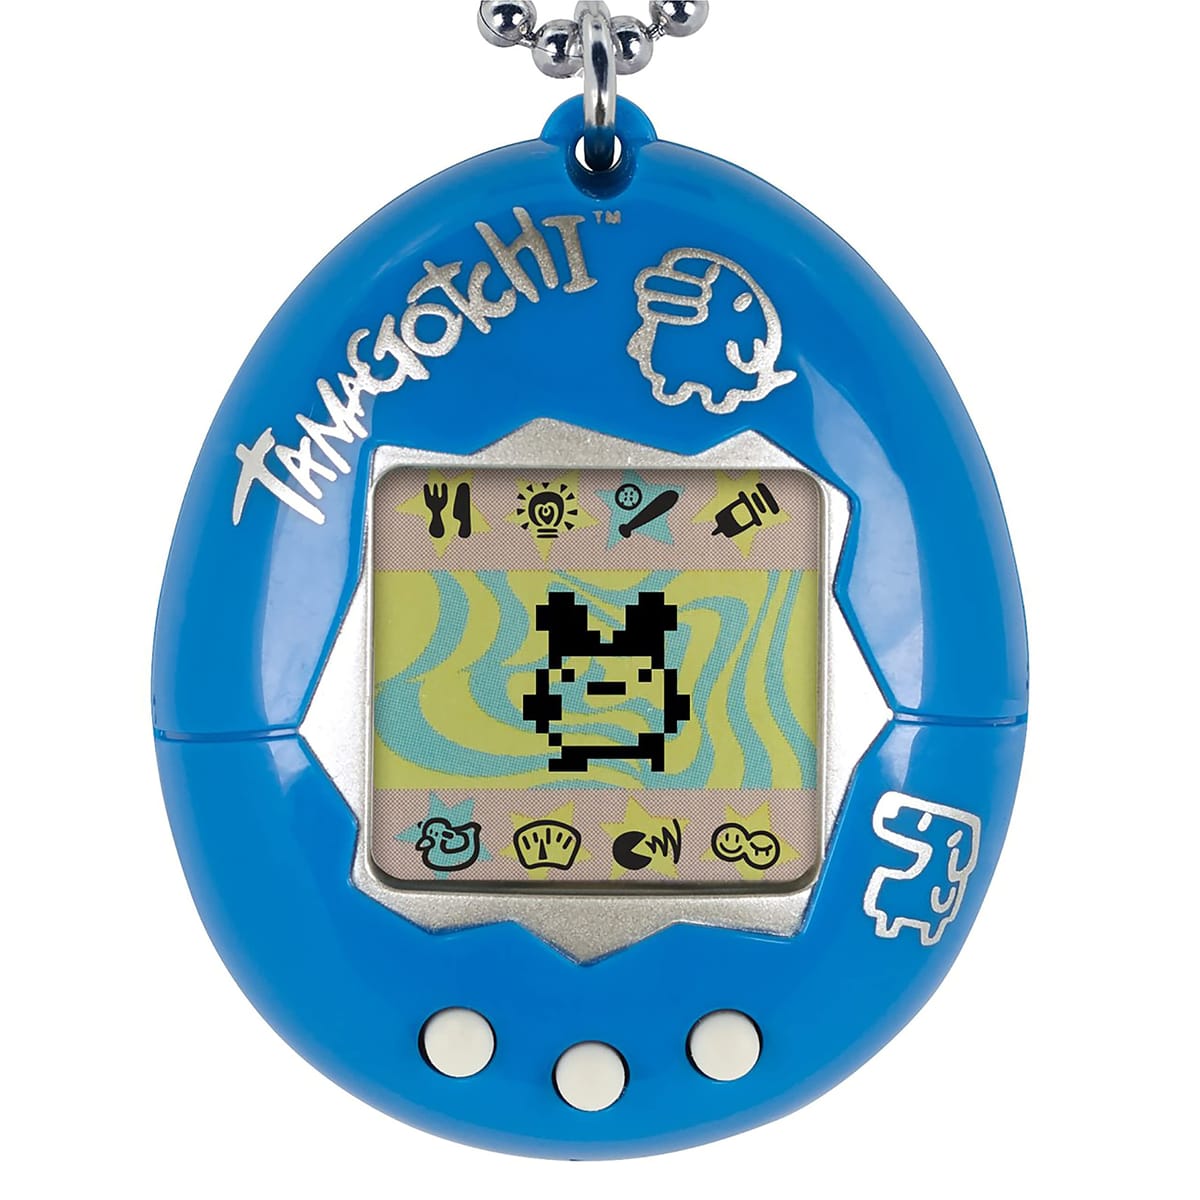 Tamagotchi Original (たまごっちオリジナル) 電子ゲーム - ブルーとシルバー (新ロゴ) [日本語ではない場合があります]